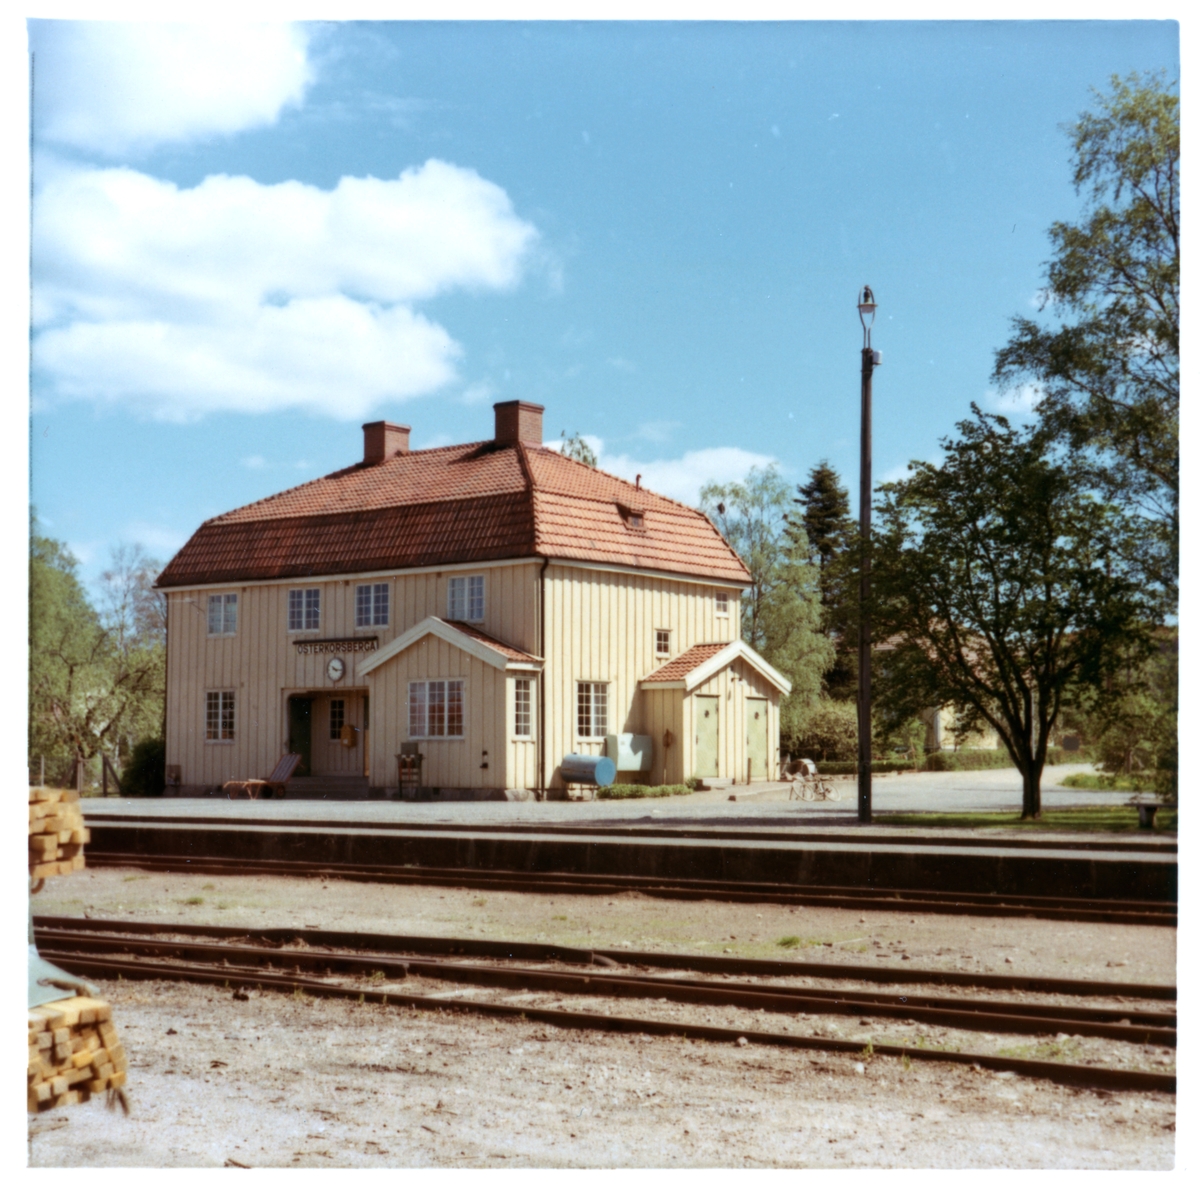 Station anlagd 1913. Tvåvånings stationshus i trä.